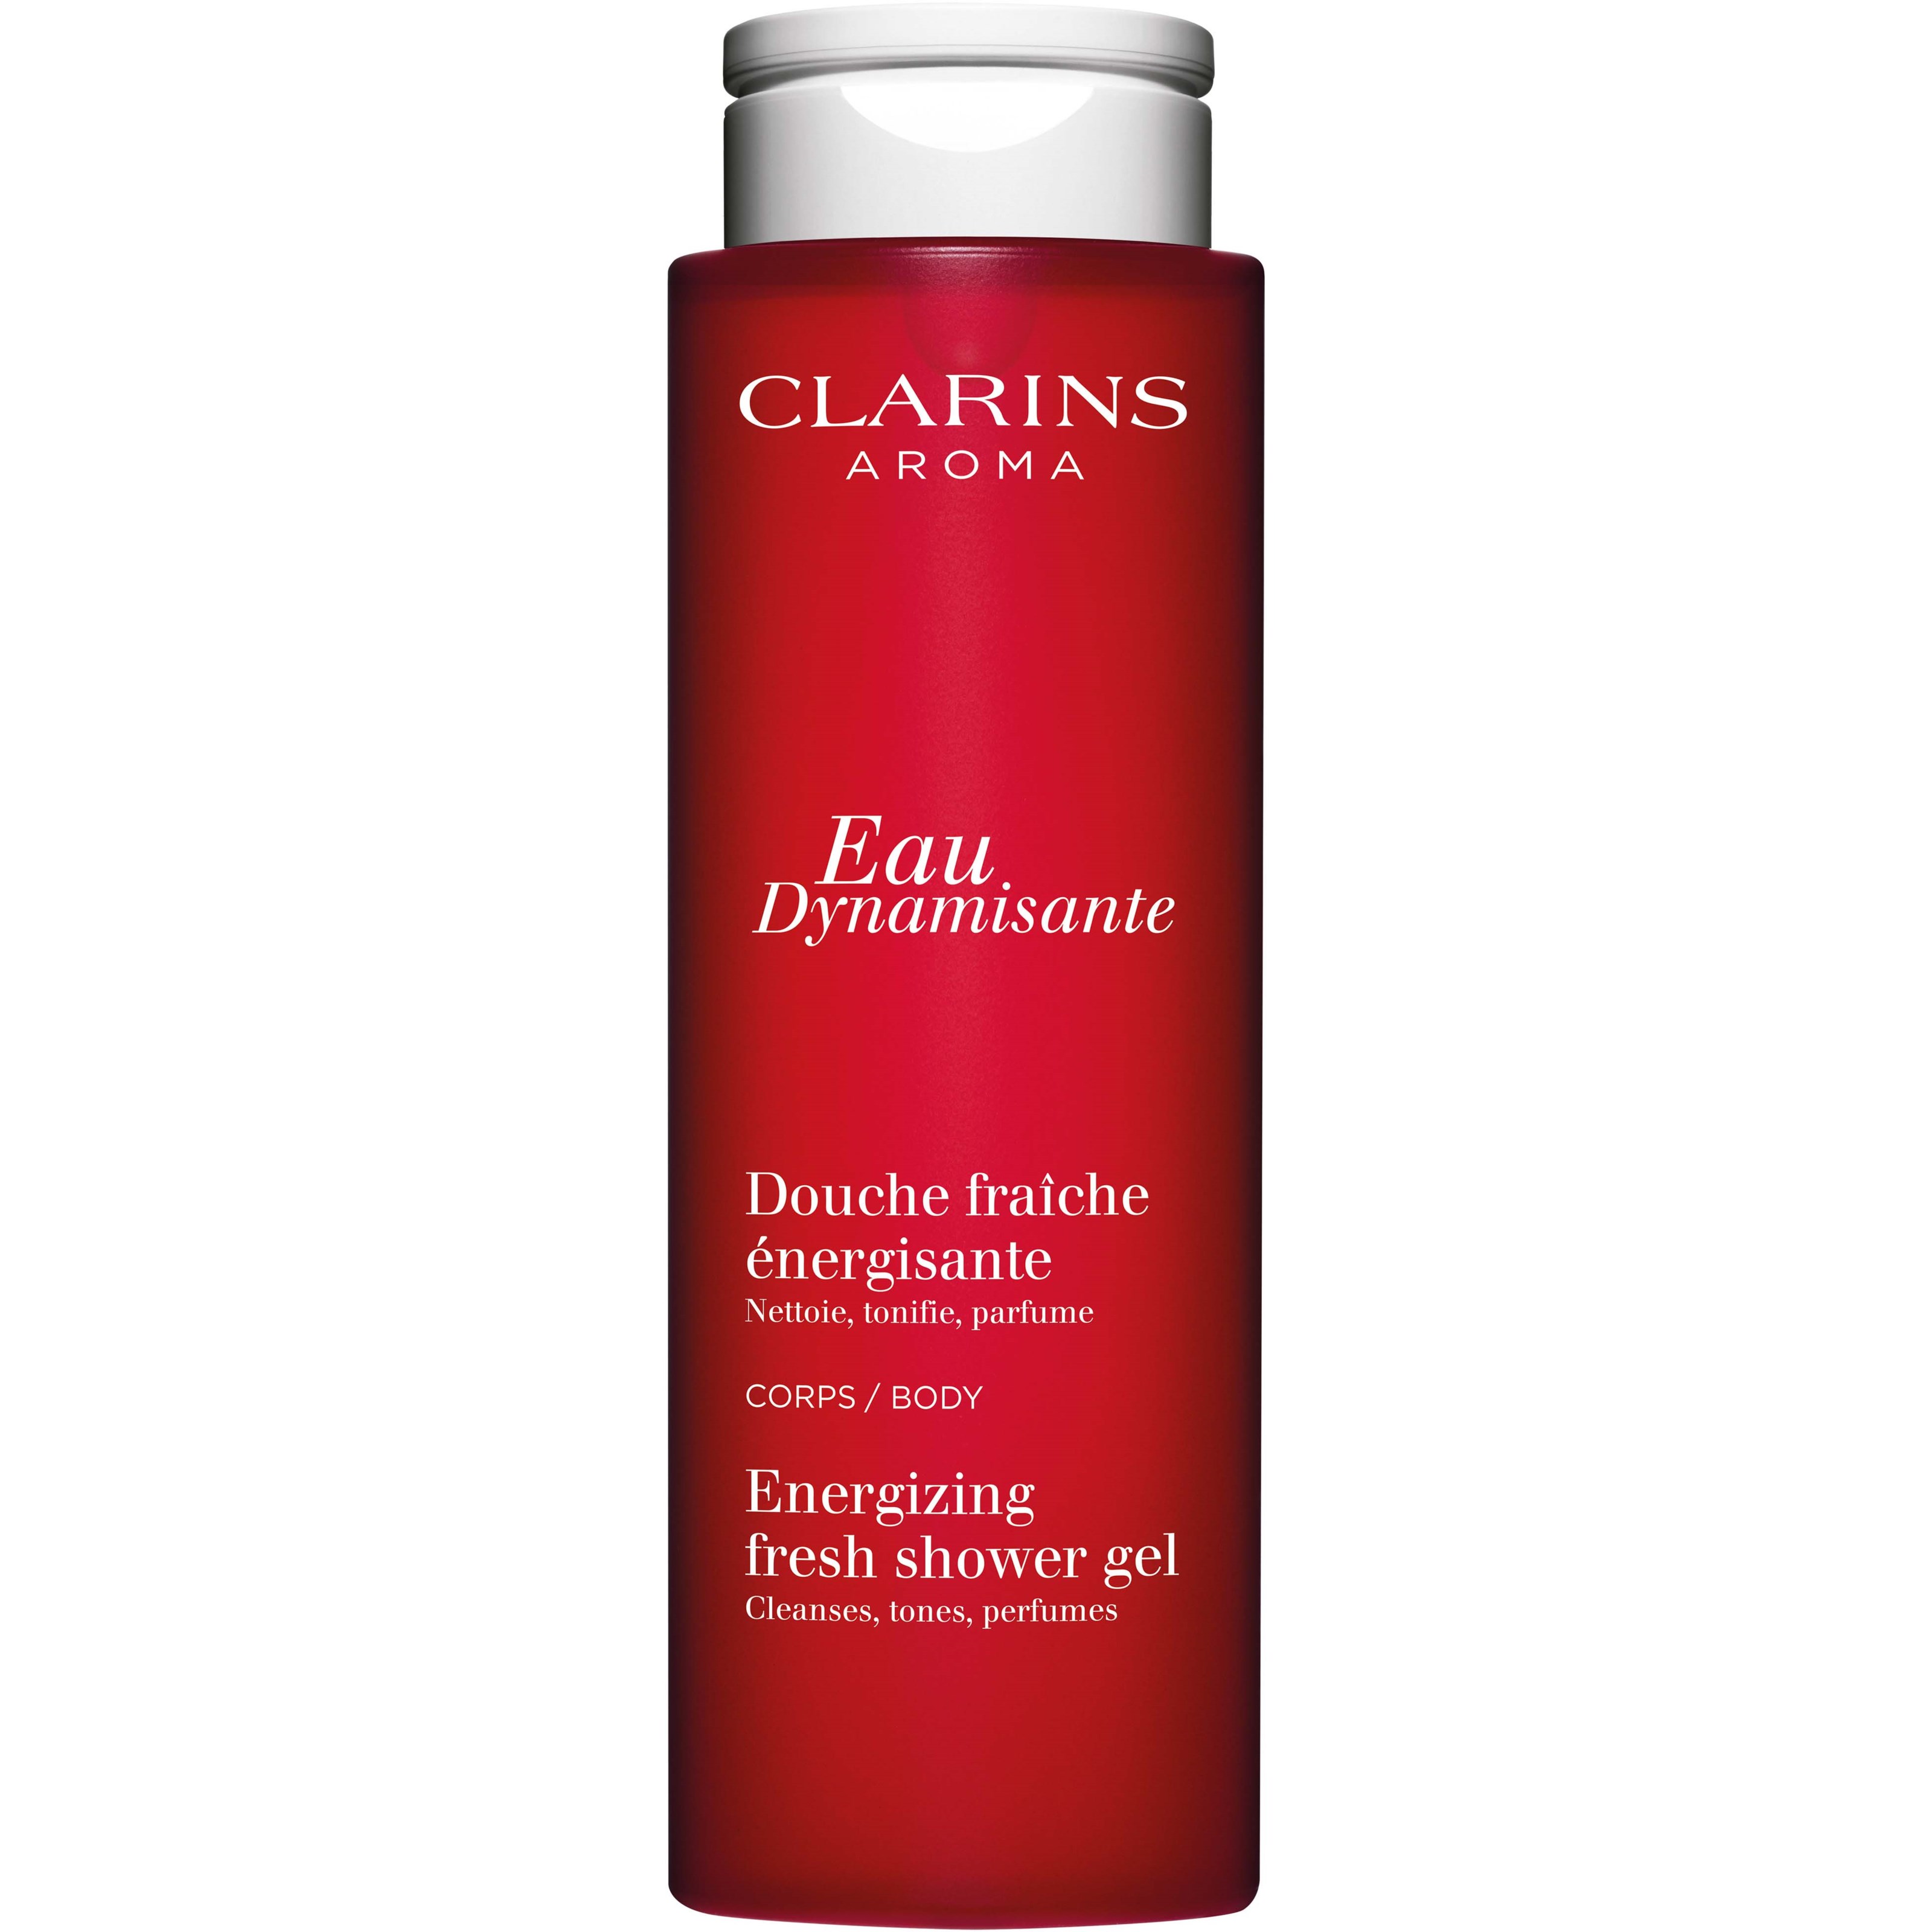 Clarins Eau Dynamisante Energizing Fresh Shower Gel 200 ml